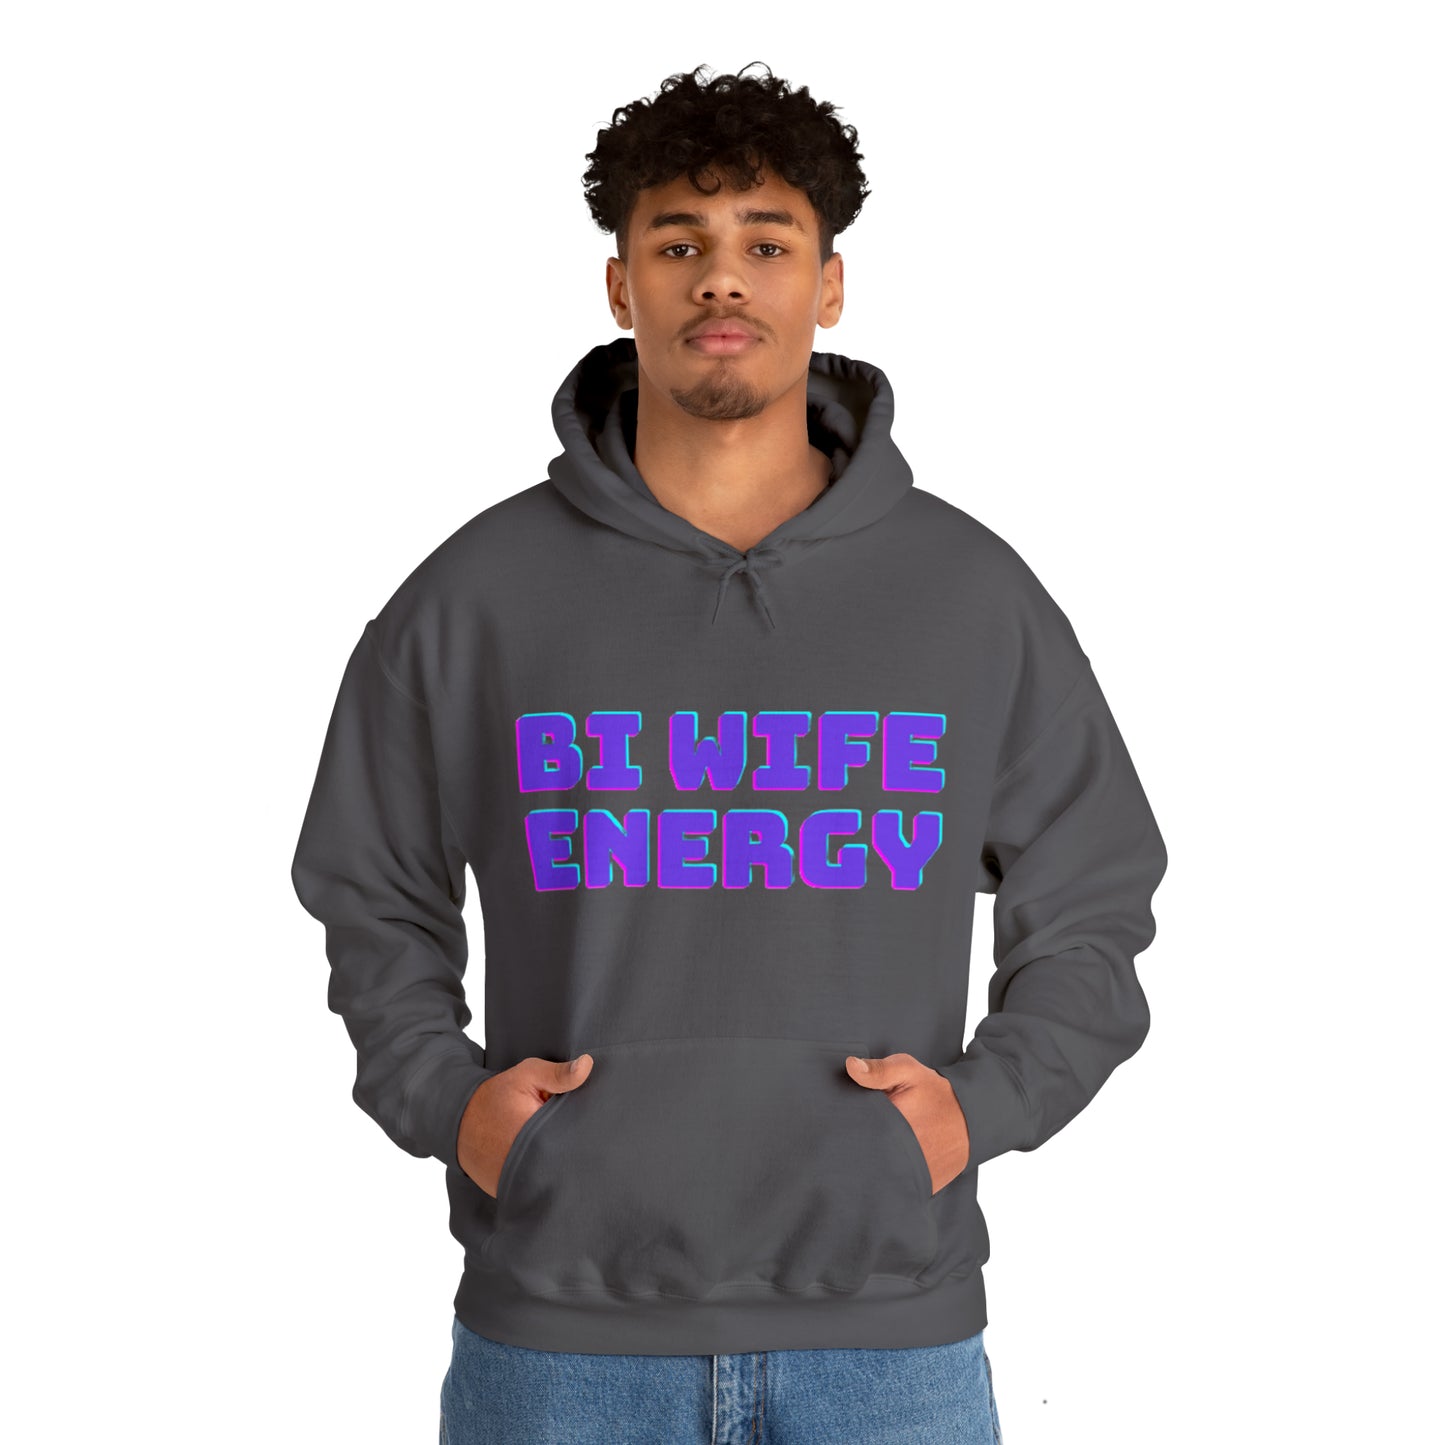 Bi Wife Energy Unisex Hooded Sweatshirt